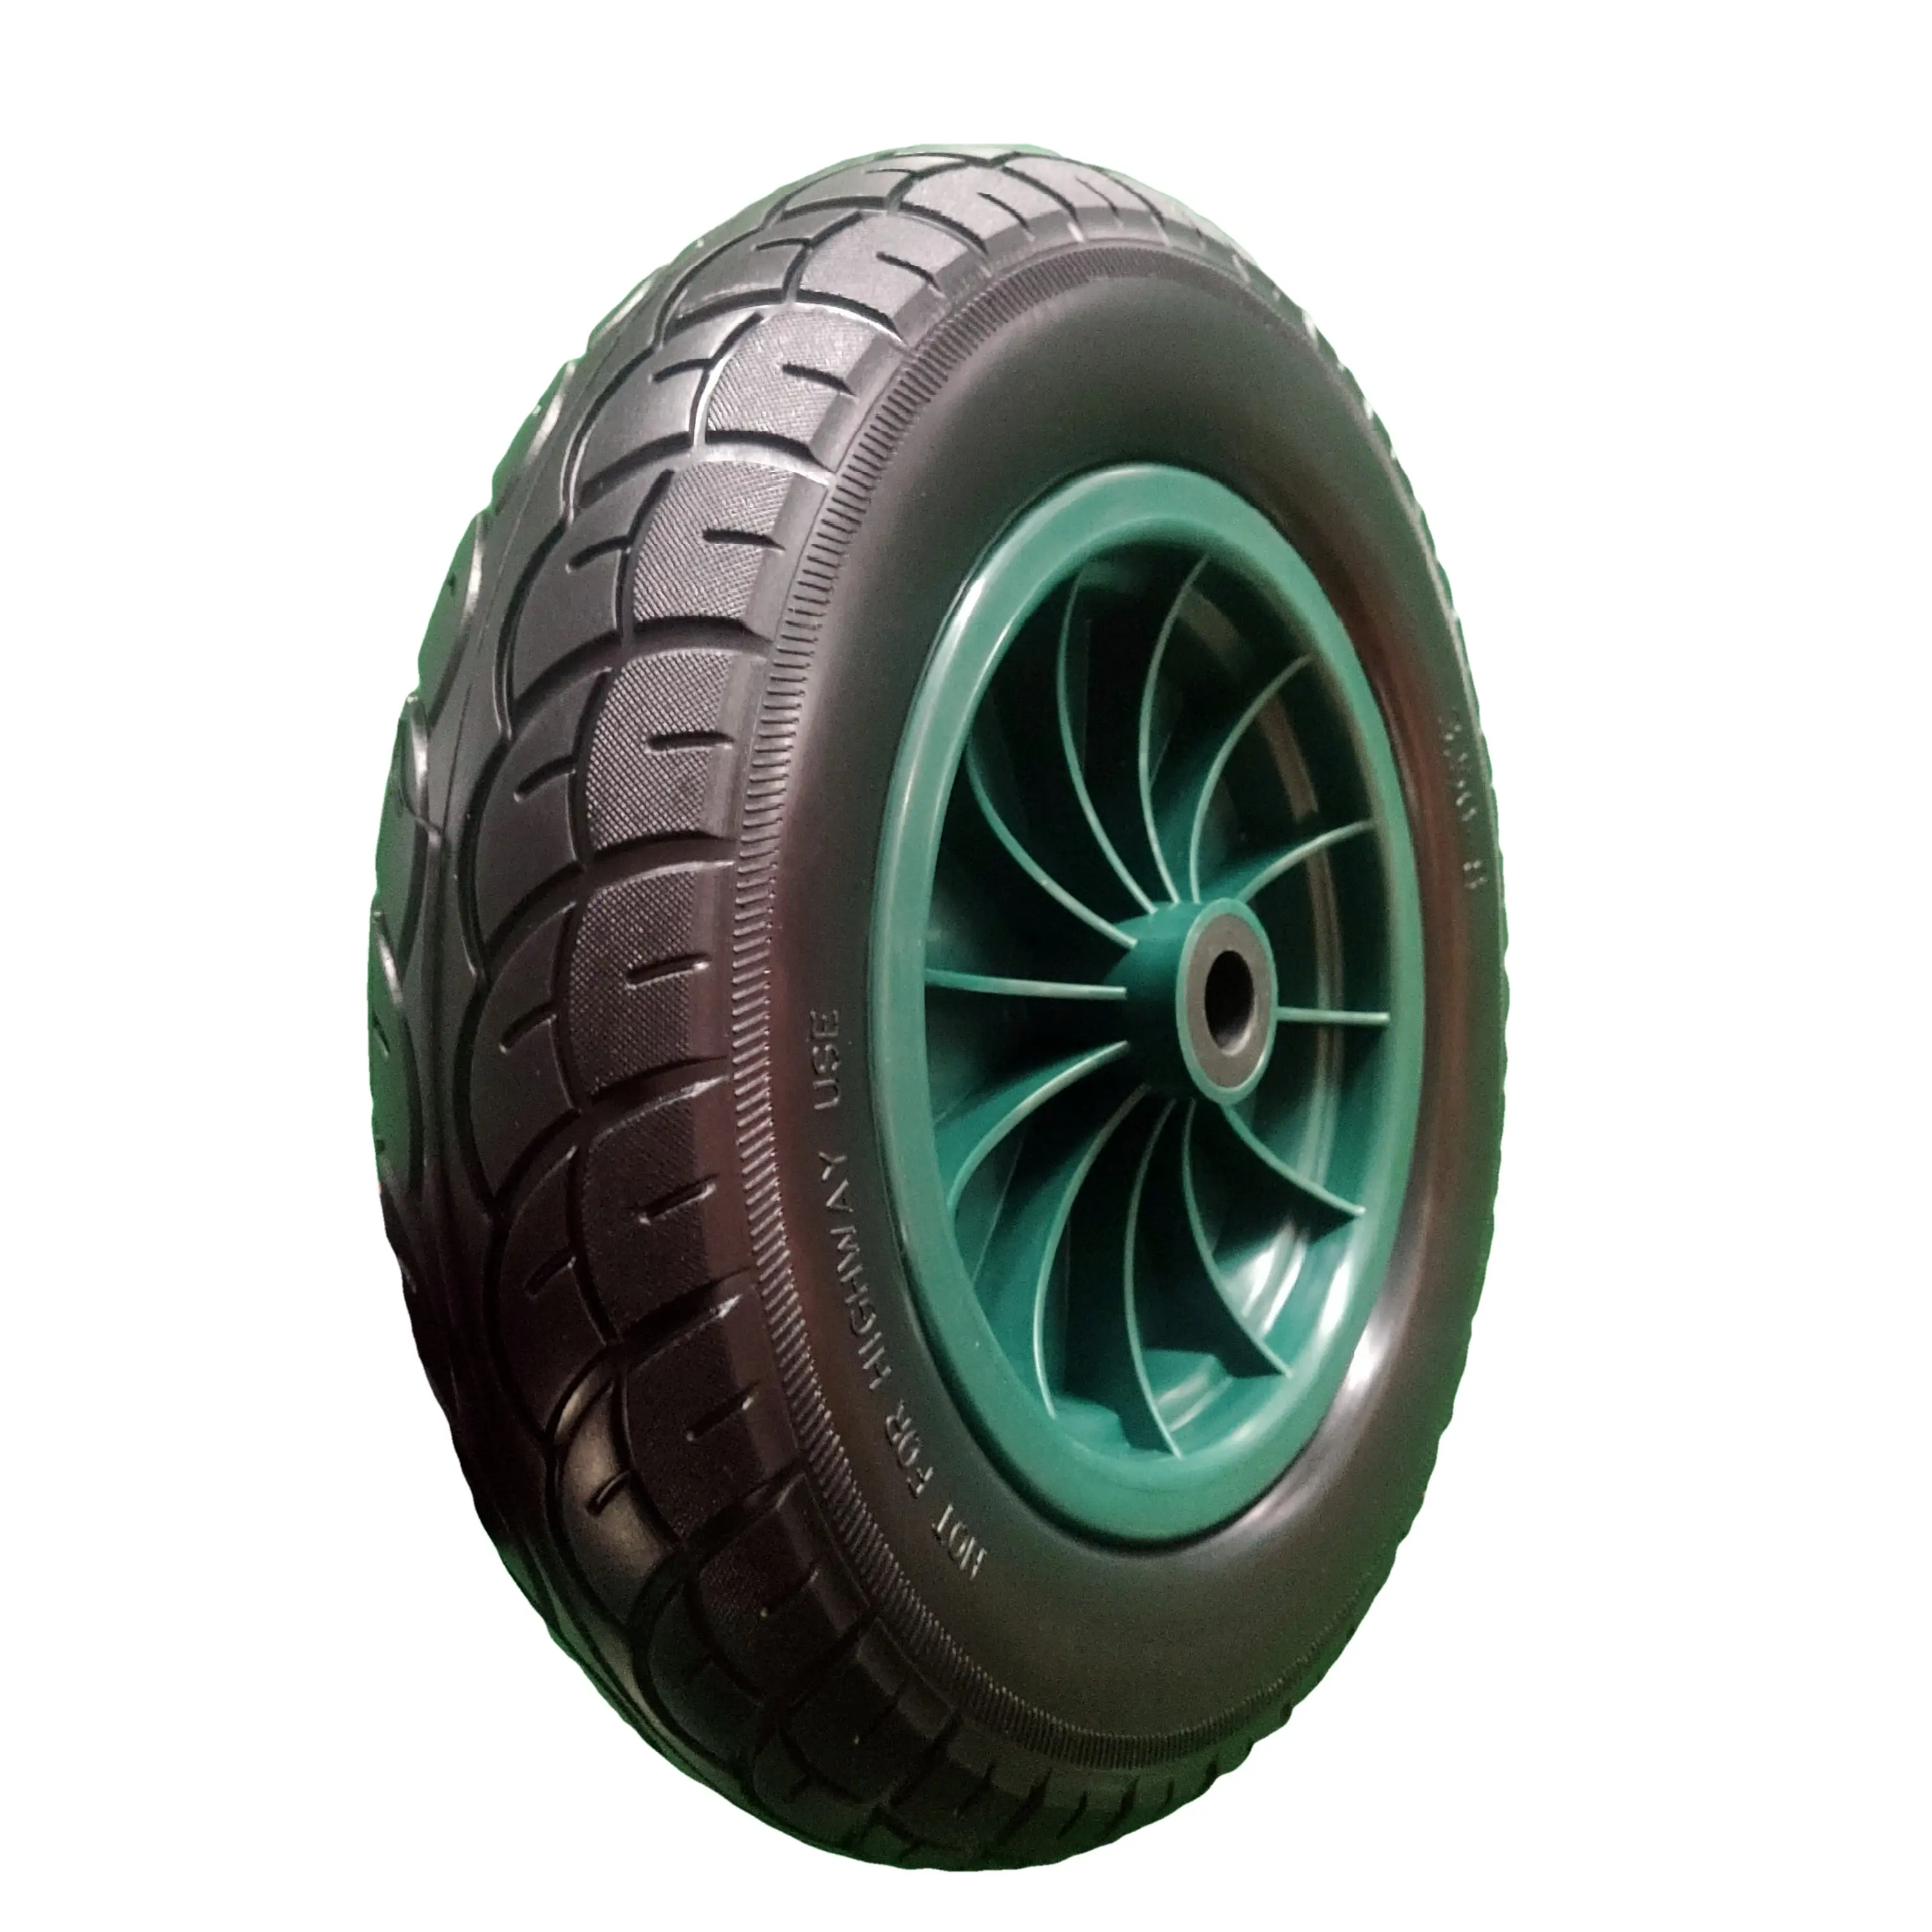 35,6 см 3,50-8 полиуретановая прочная шина и колесо 14 дюймов полиуретановая садовая тележка зеленая